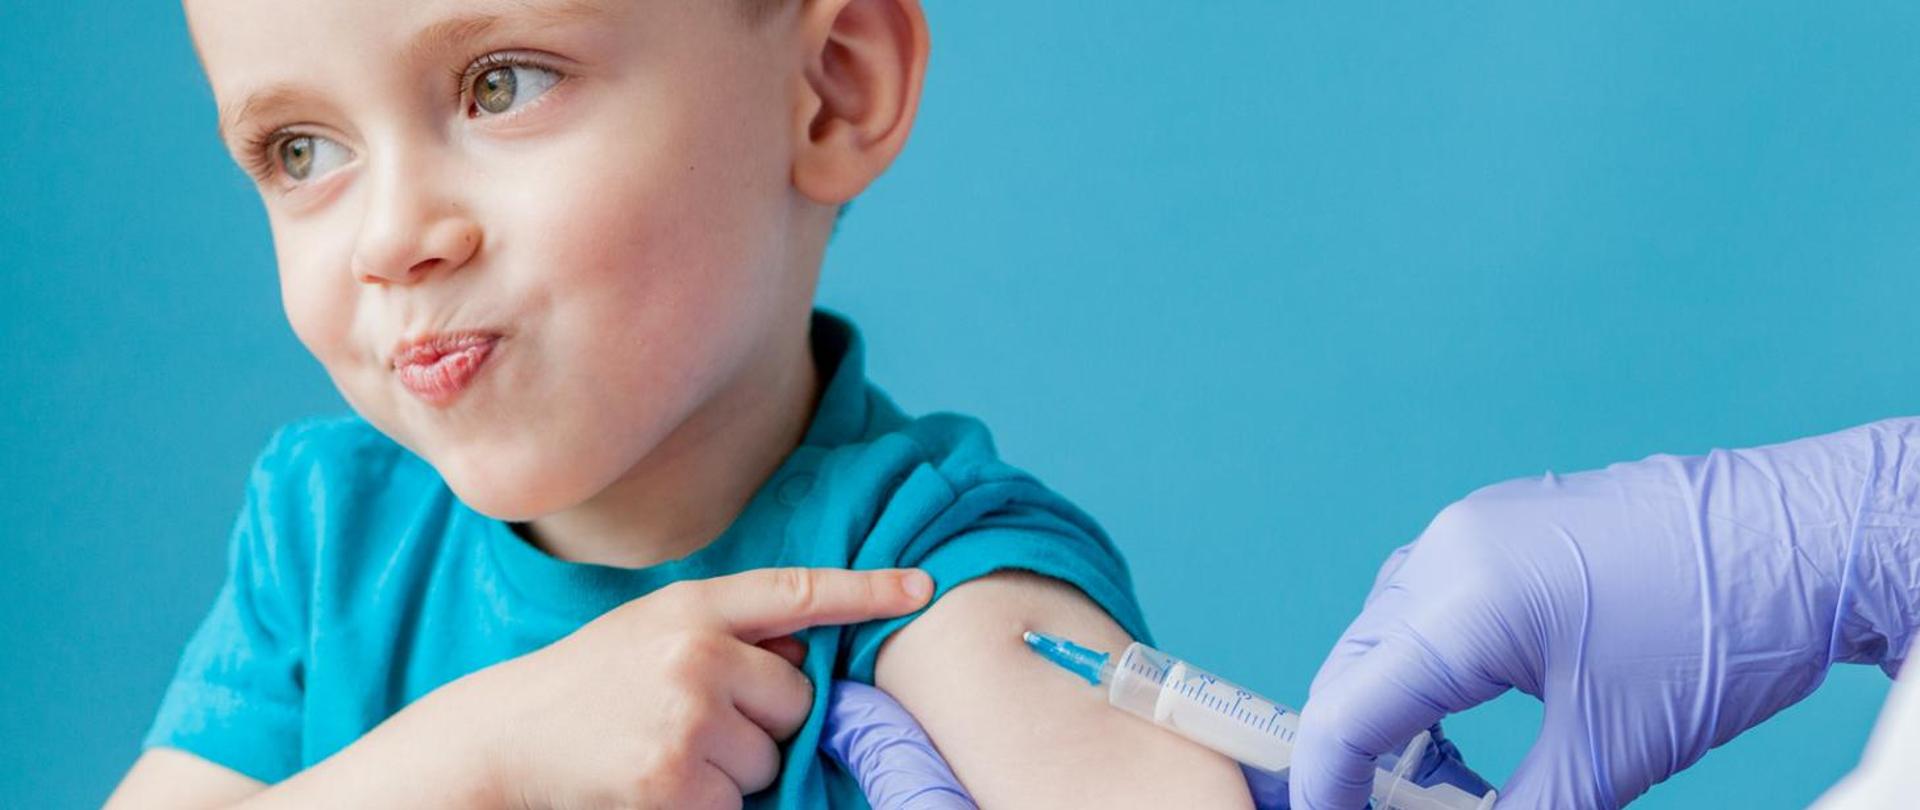 Chłopiec w niebieskiej koszulce przyjmujący szczepionkę. 